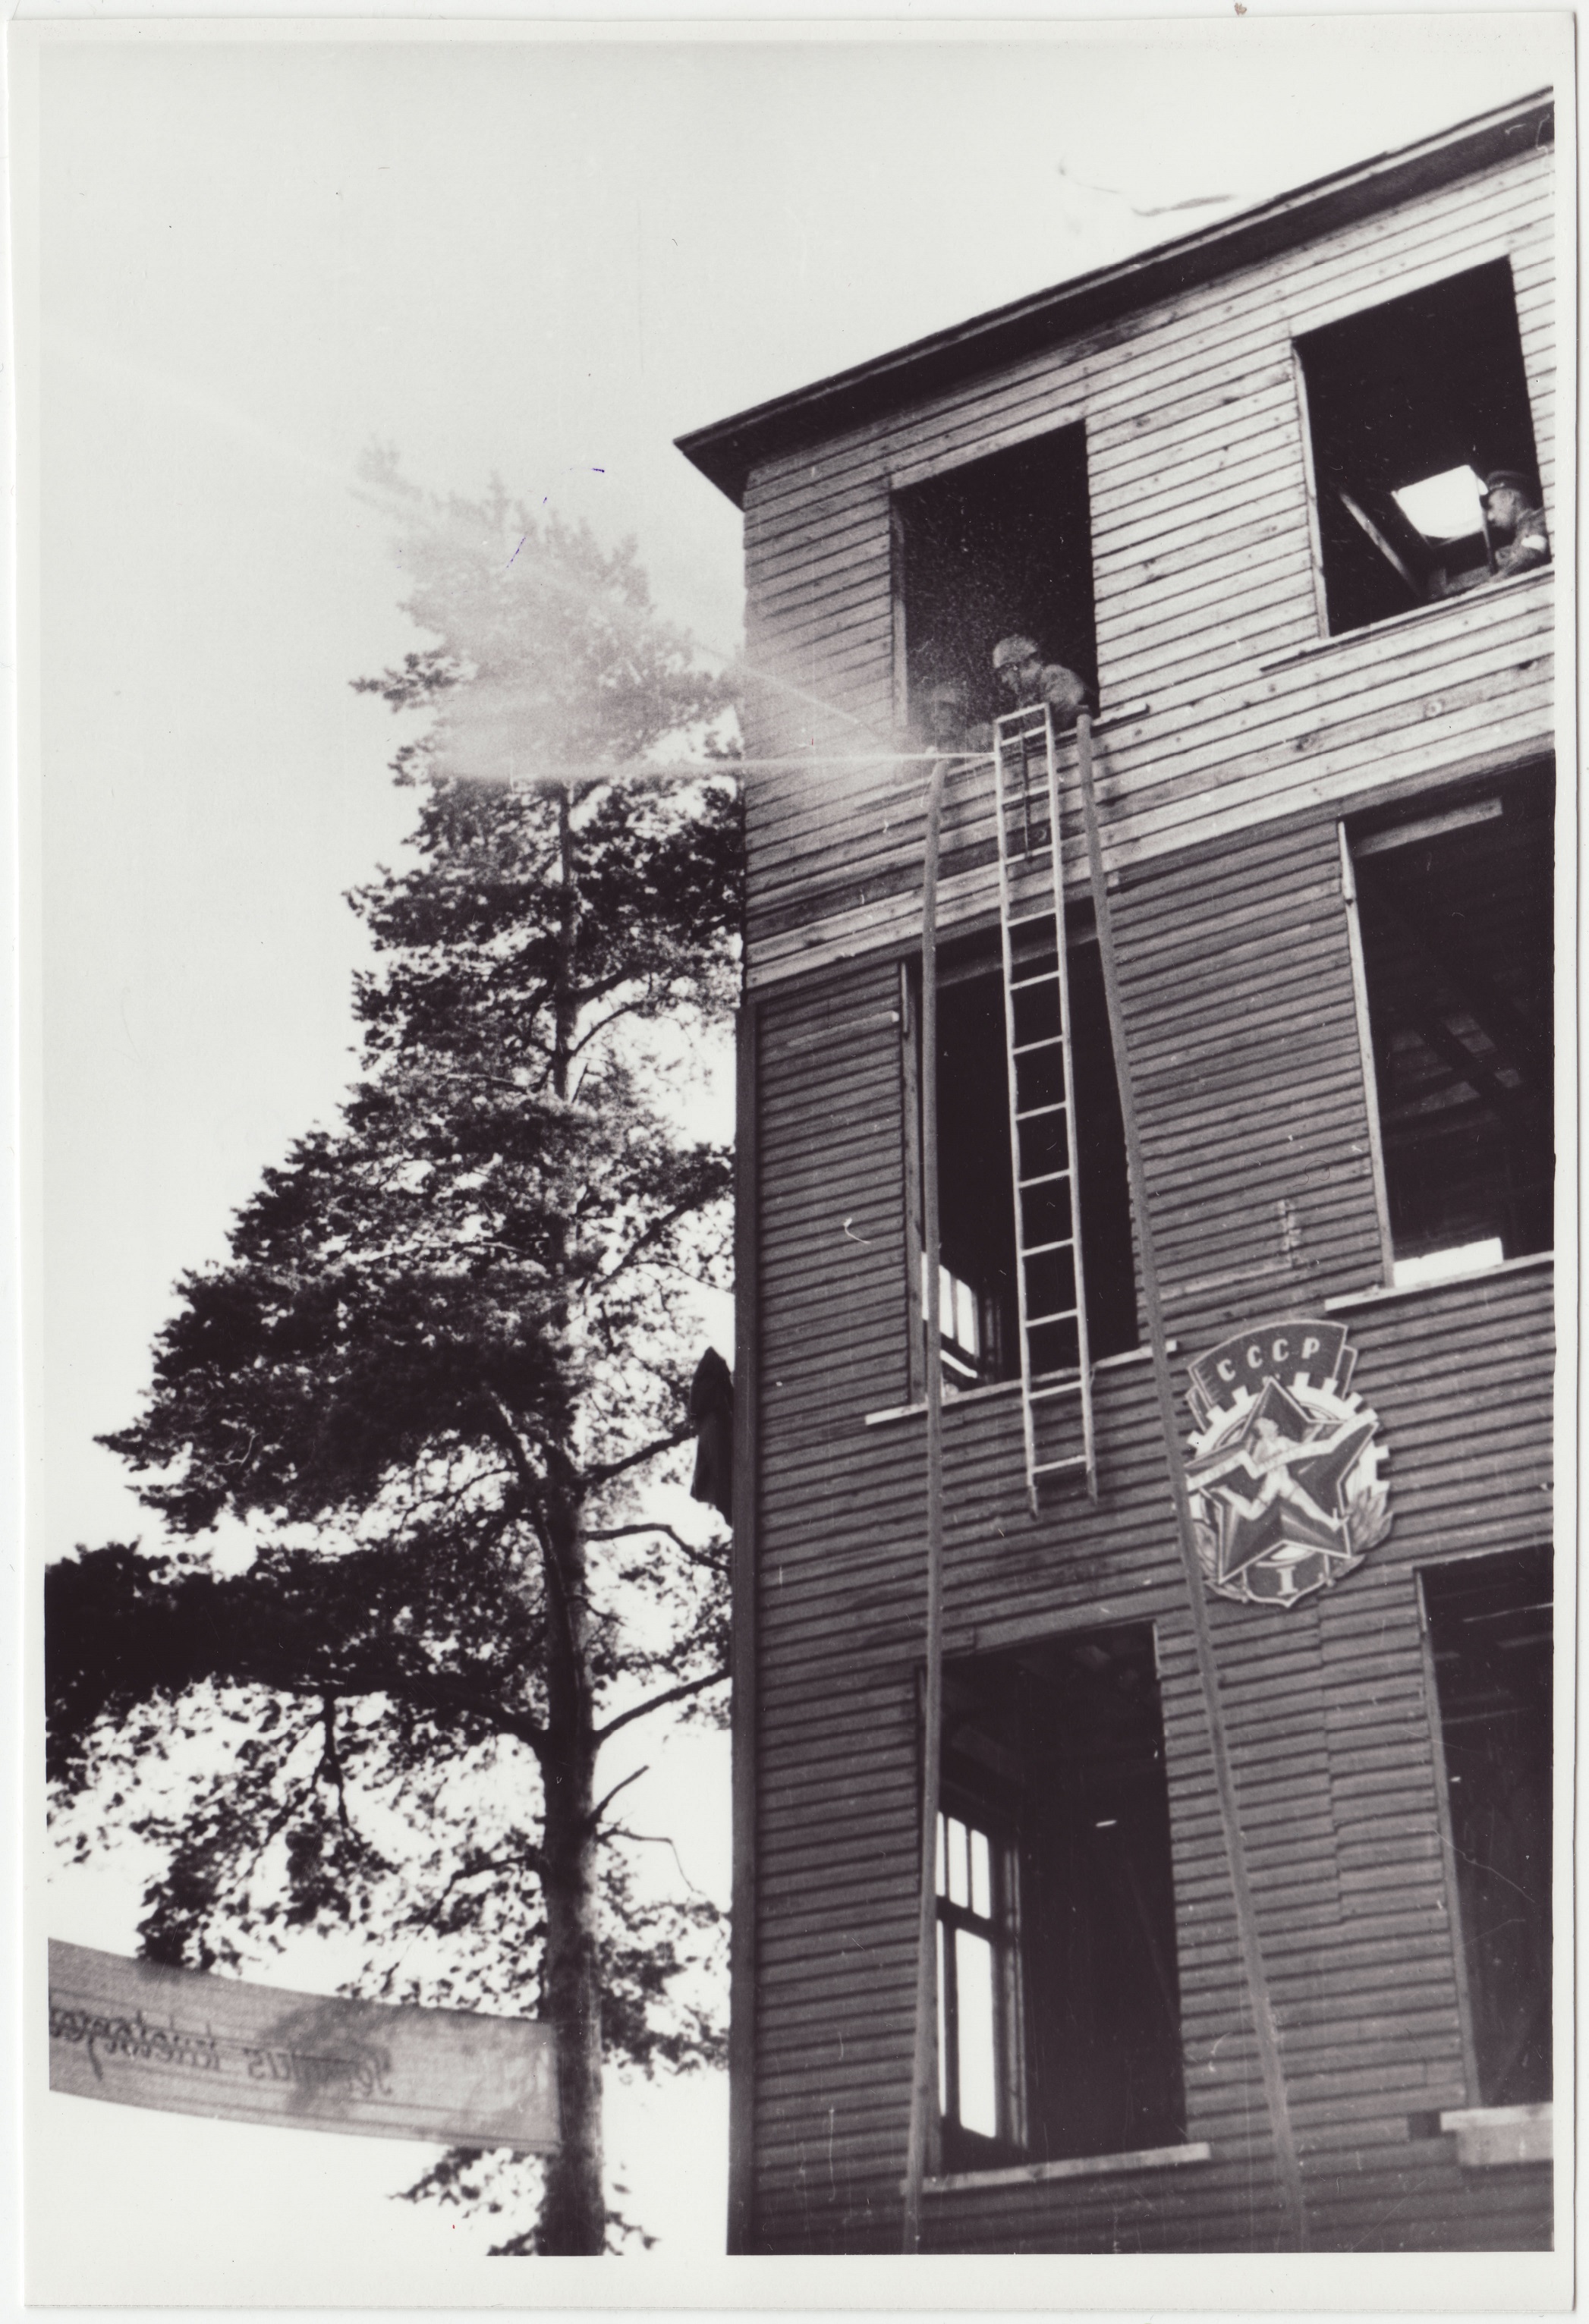 Tuletõrjevõistlused: lahinghargnemise lõppfaas - joad on väljas, 1949.a.